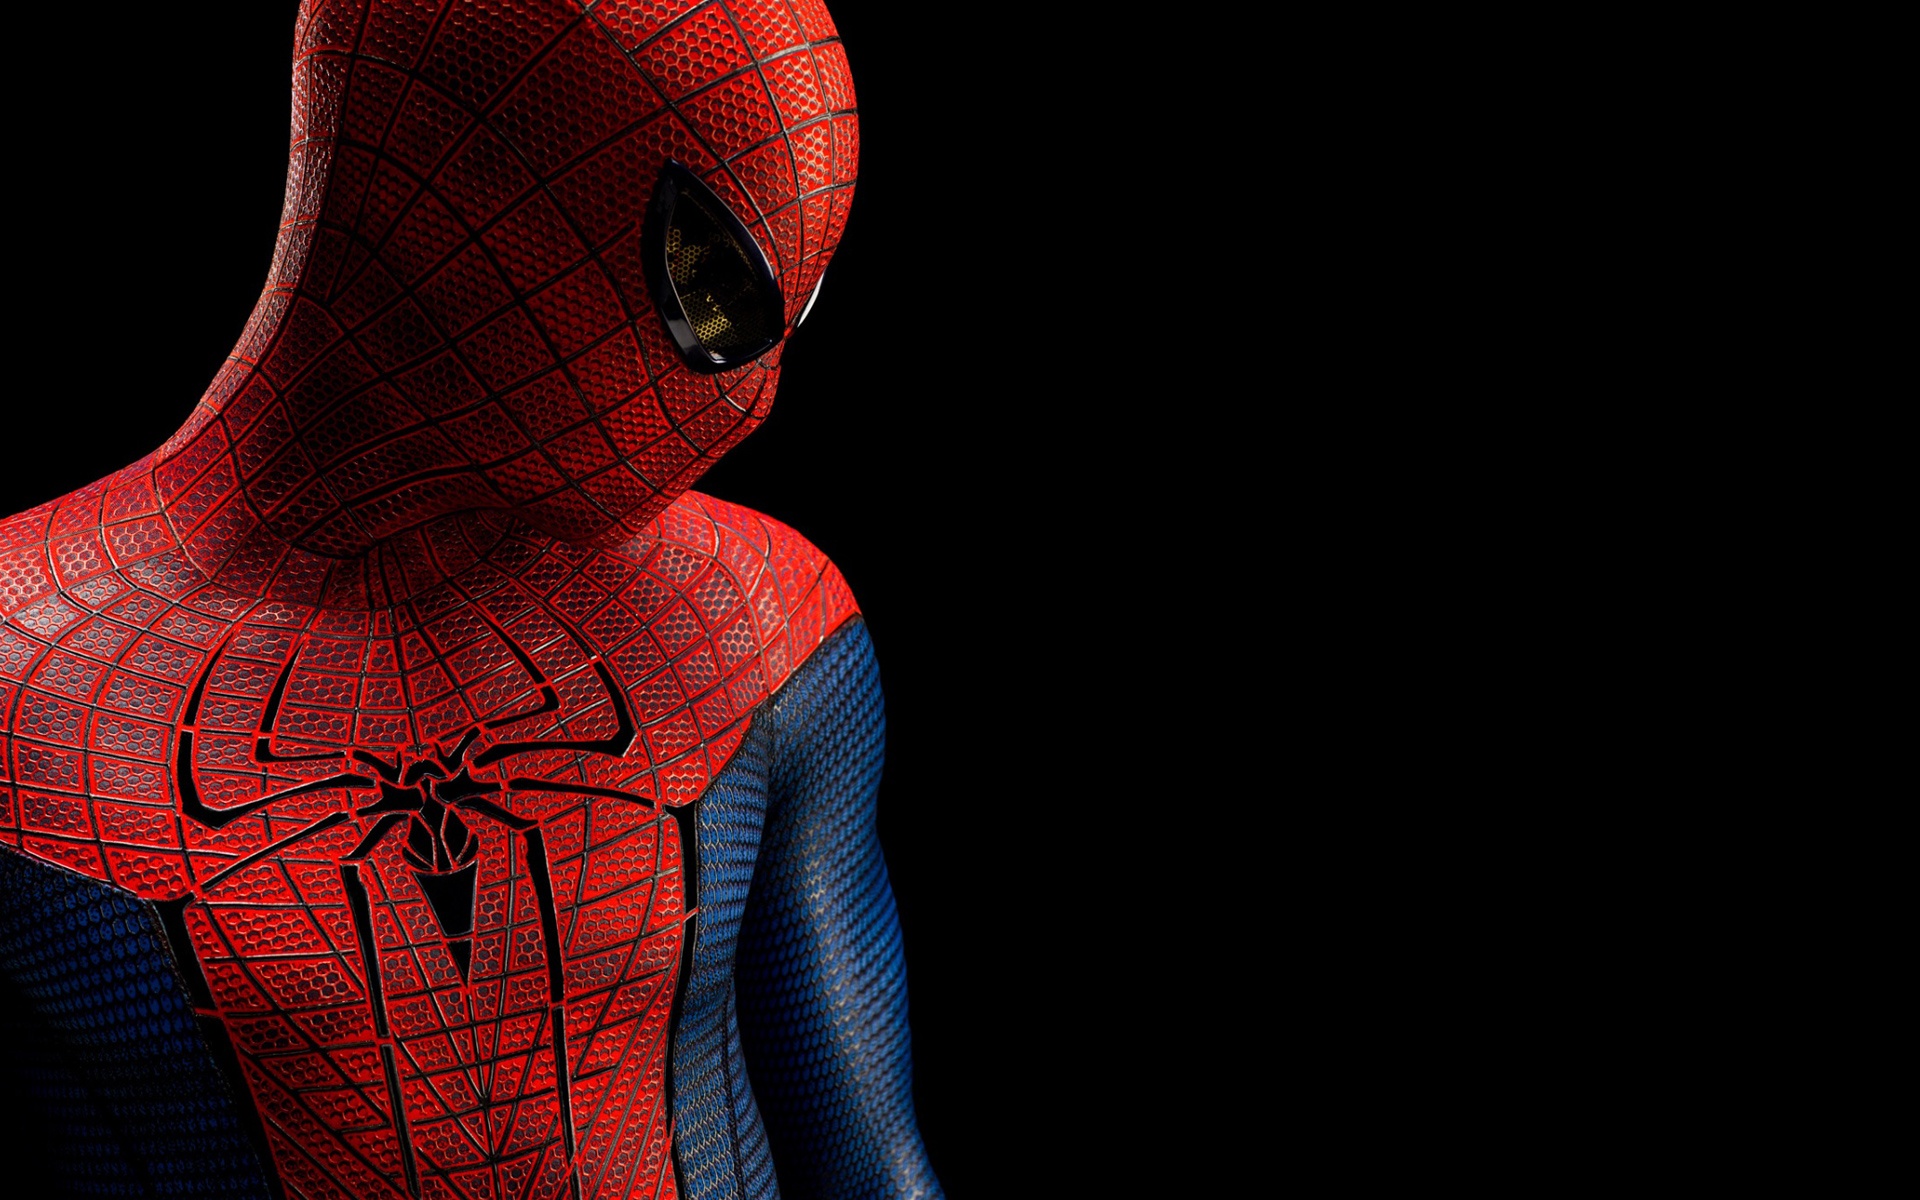 The Amazing Spider Man movie desktop wallpaper featuring Spider-Man